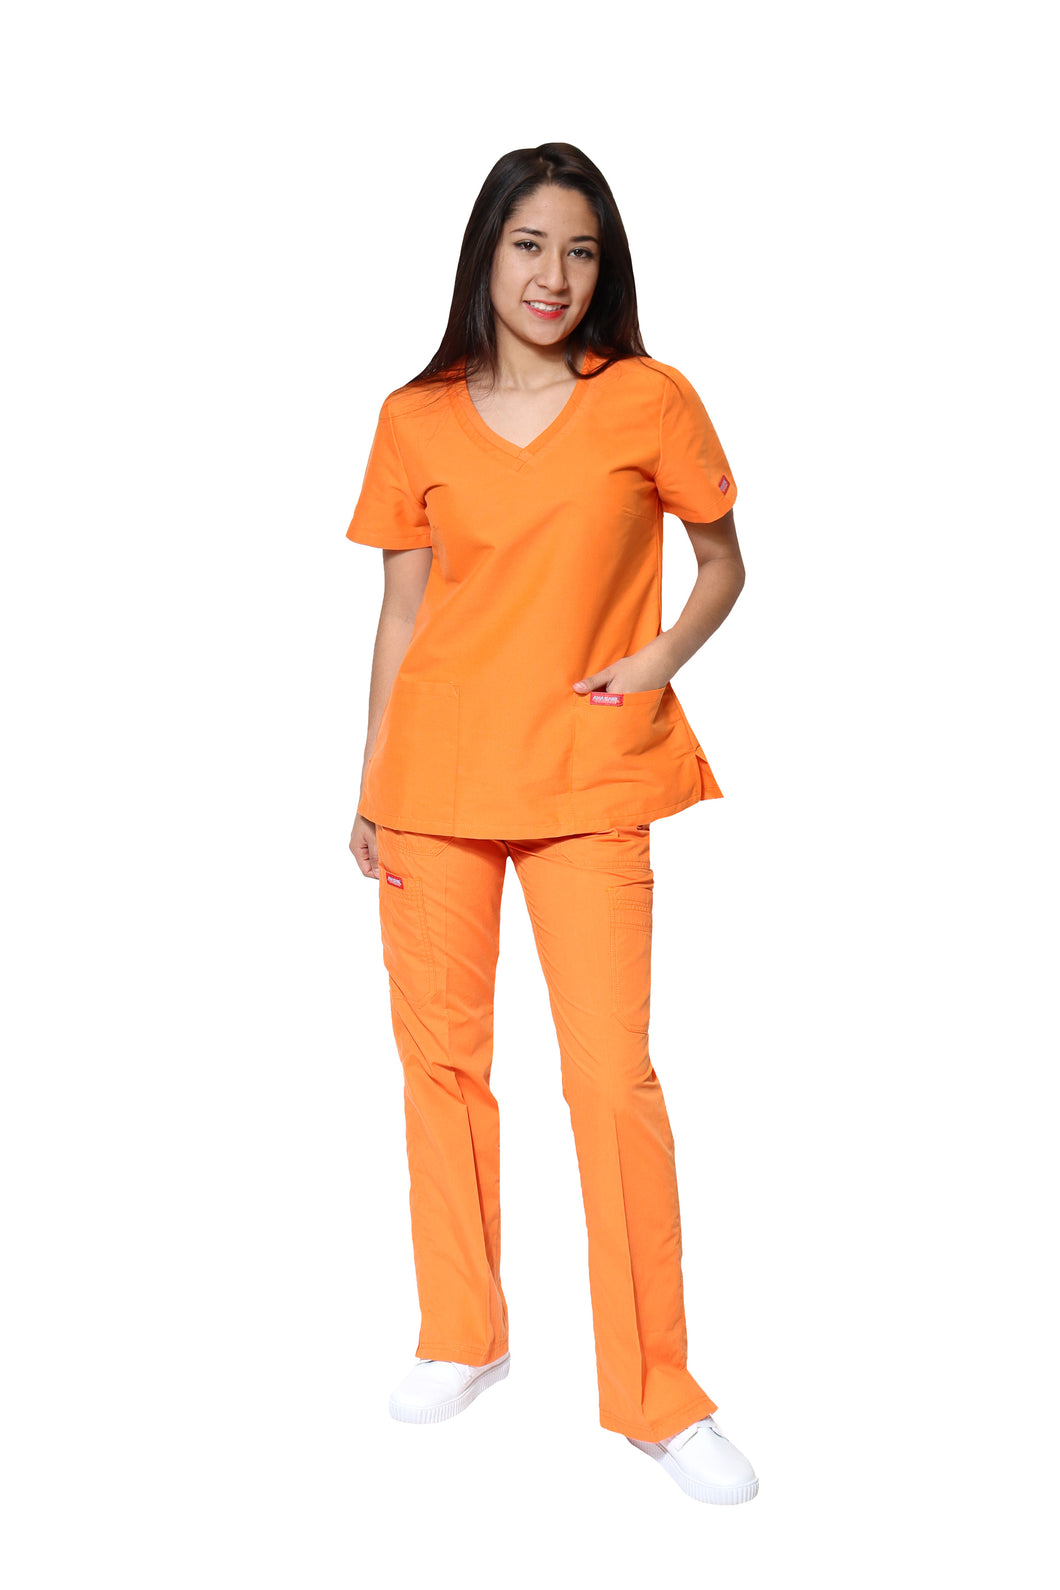 Pantalón pijama Color Naranja